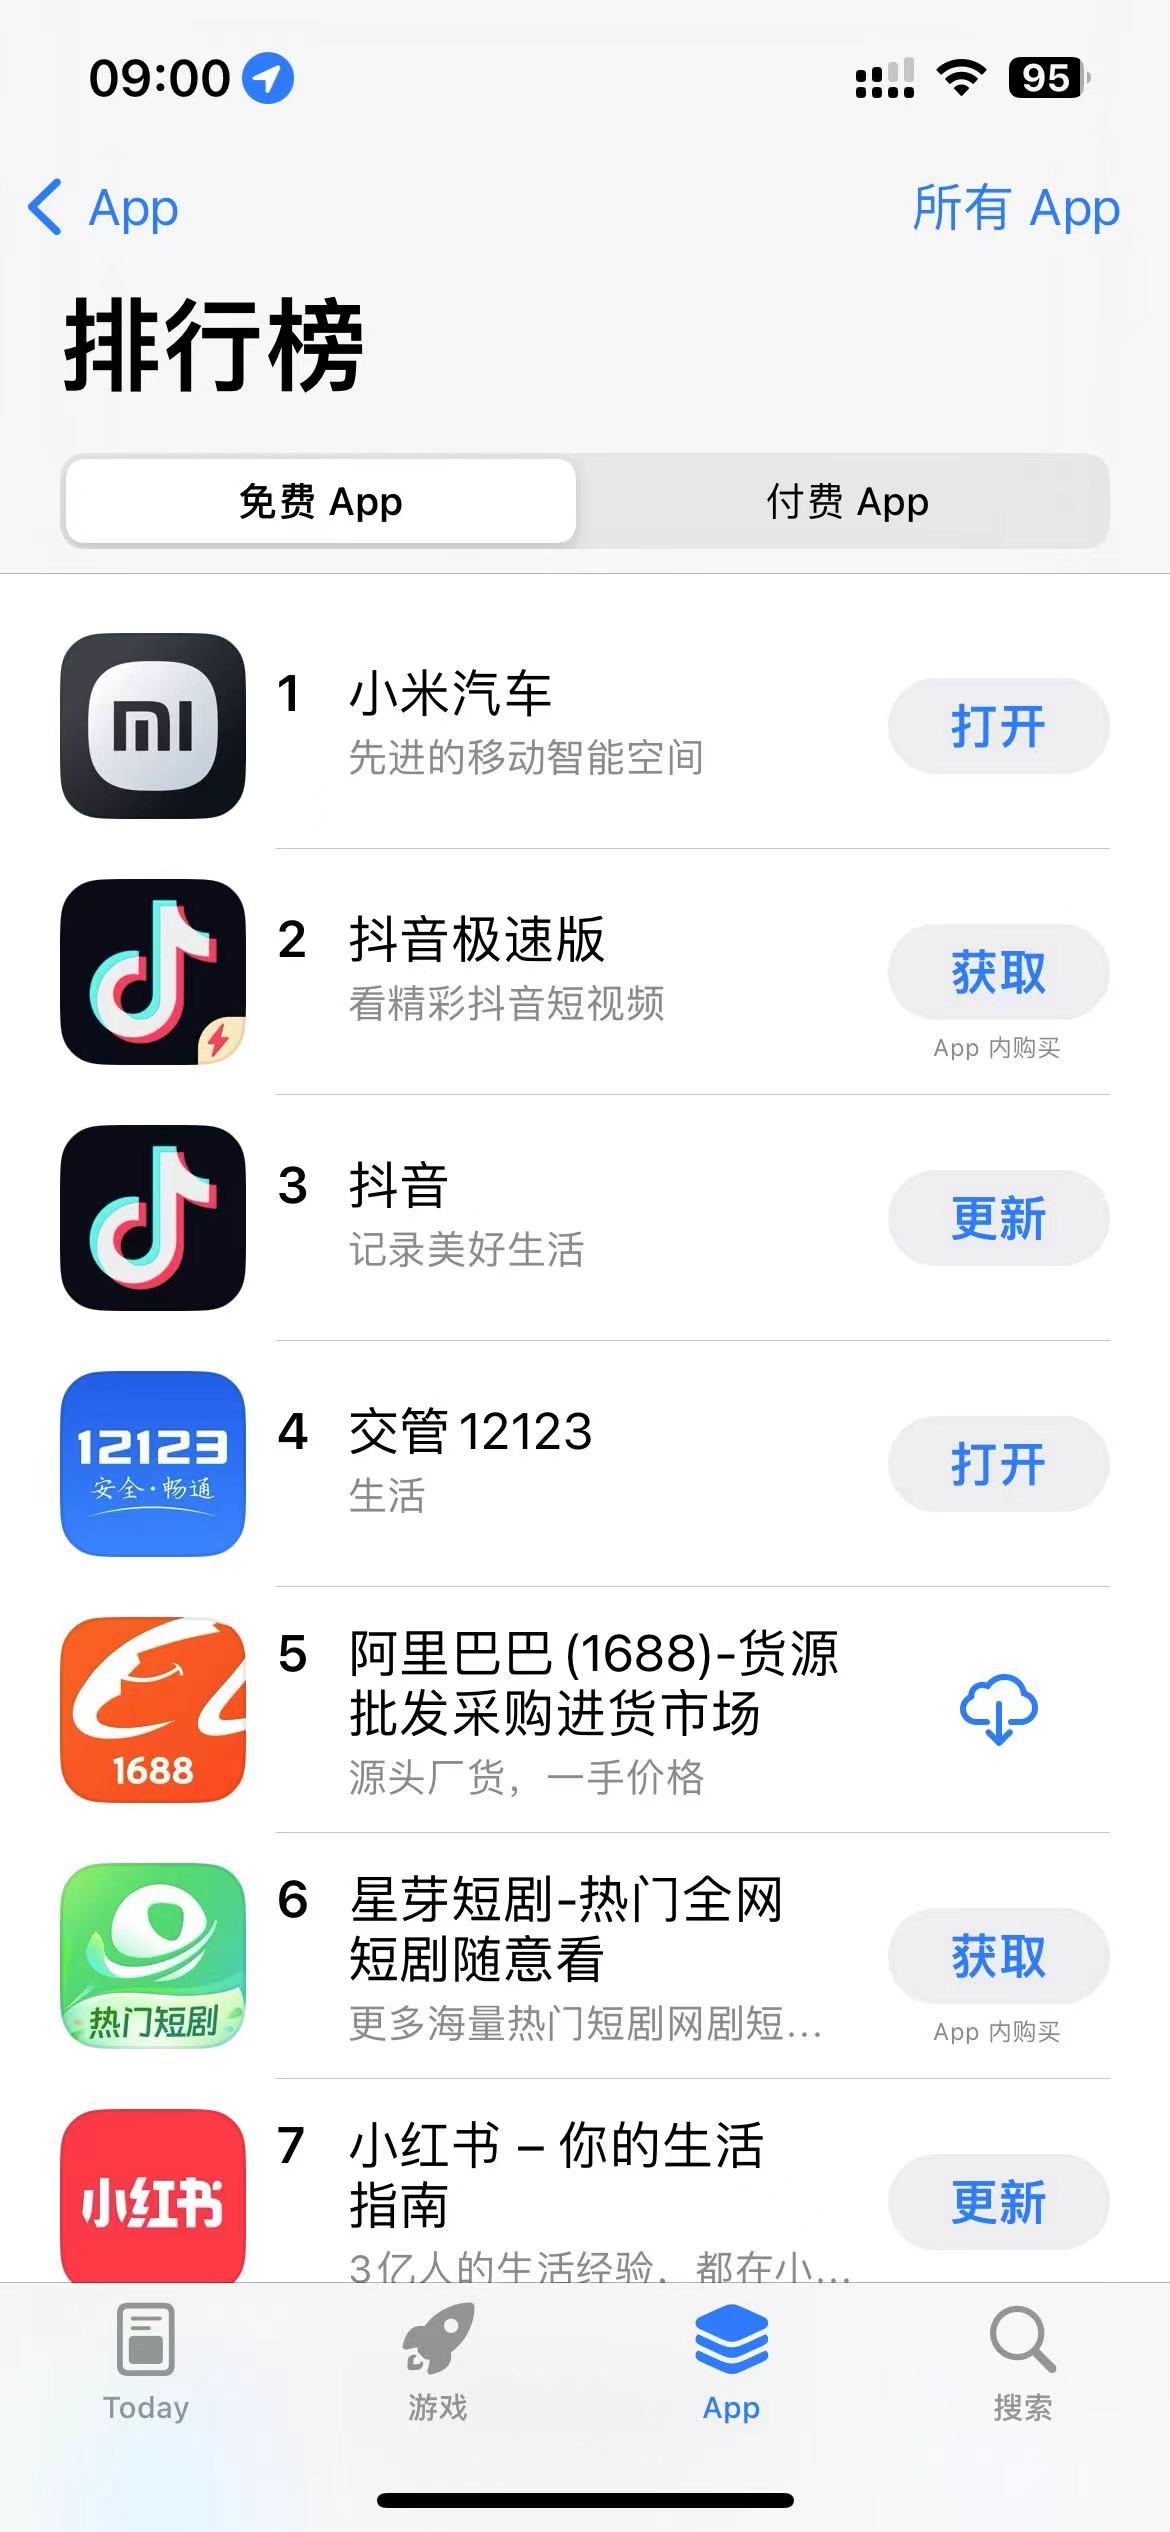 小米汽車登頂蘋果App Store 雷軍建議蘋果用戶買SU7